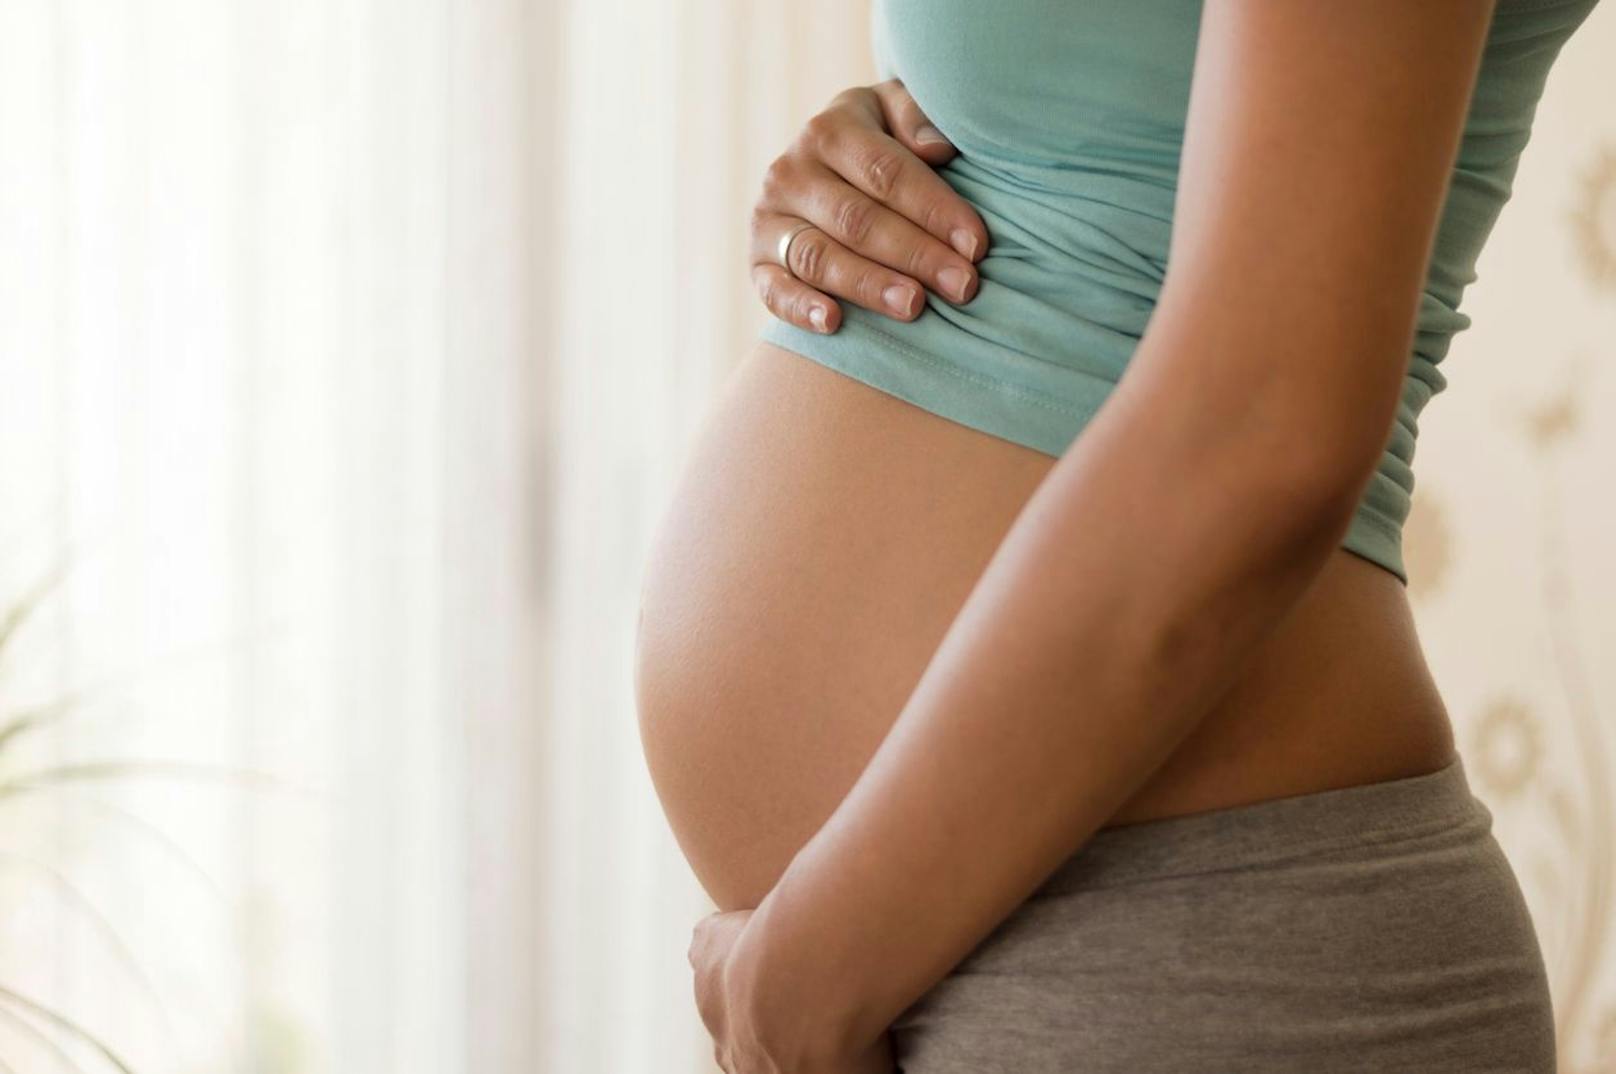 Schwangere zählen zu einer der Covid-Risikogruppen. Für sie wird die Impfung dringend empfohlen.